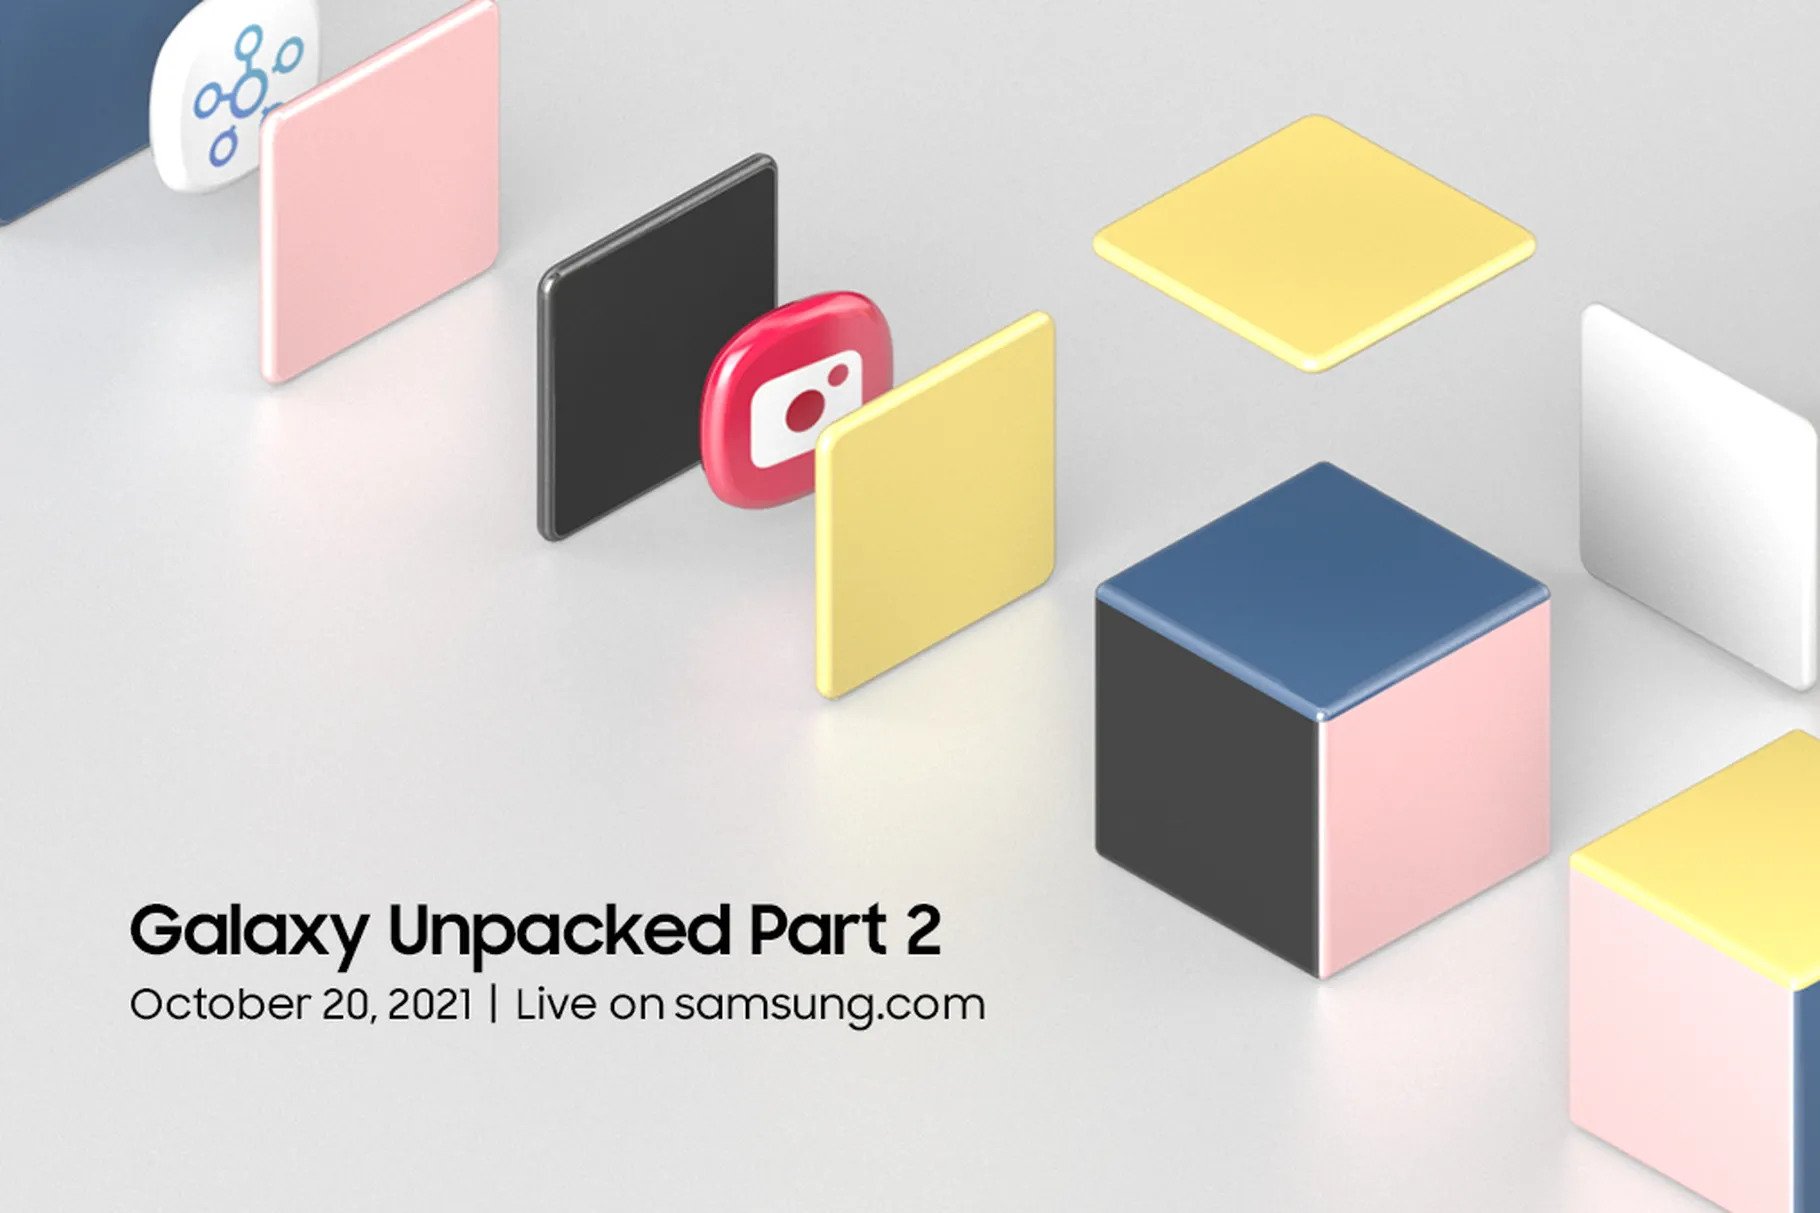 Samsung kündigt Galaxy Unpacked Teil 2 an, der am 20. Oktober stattfindet